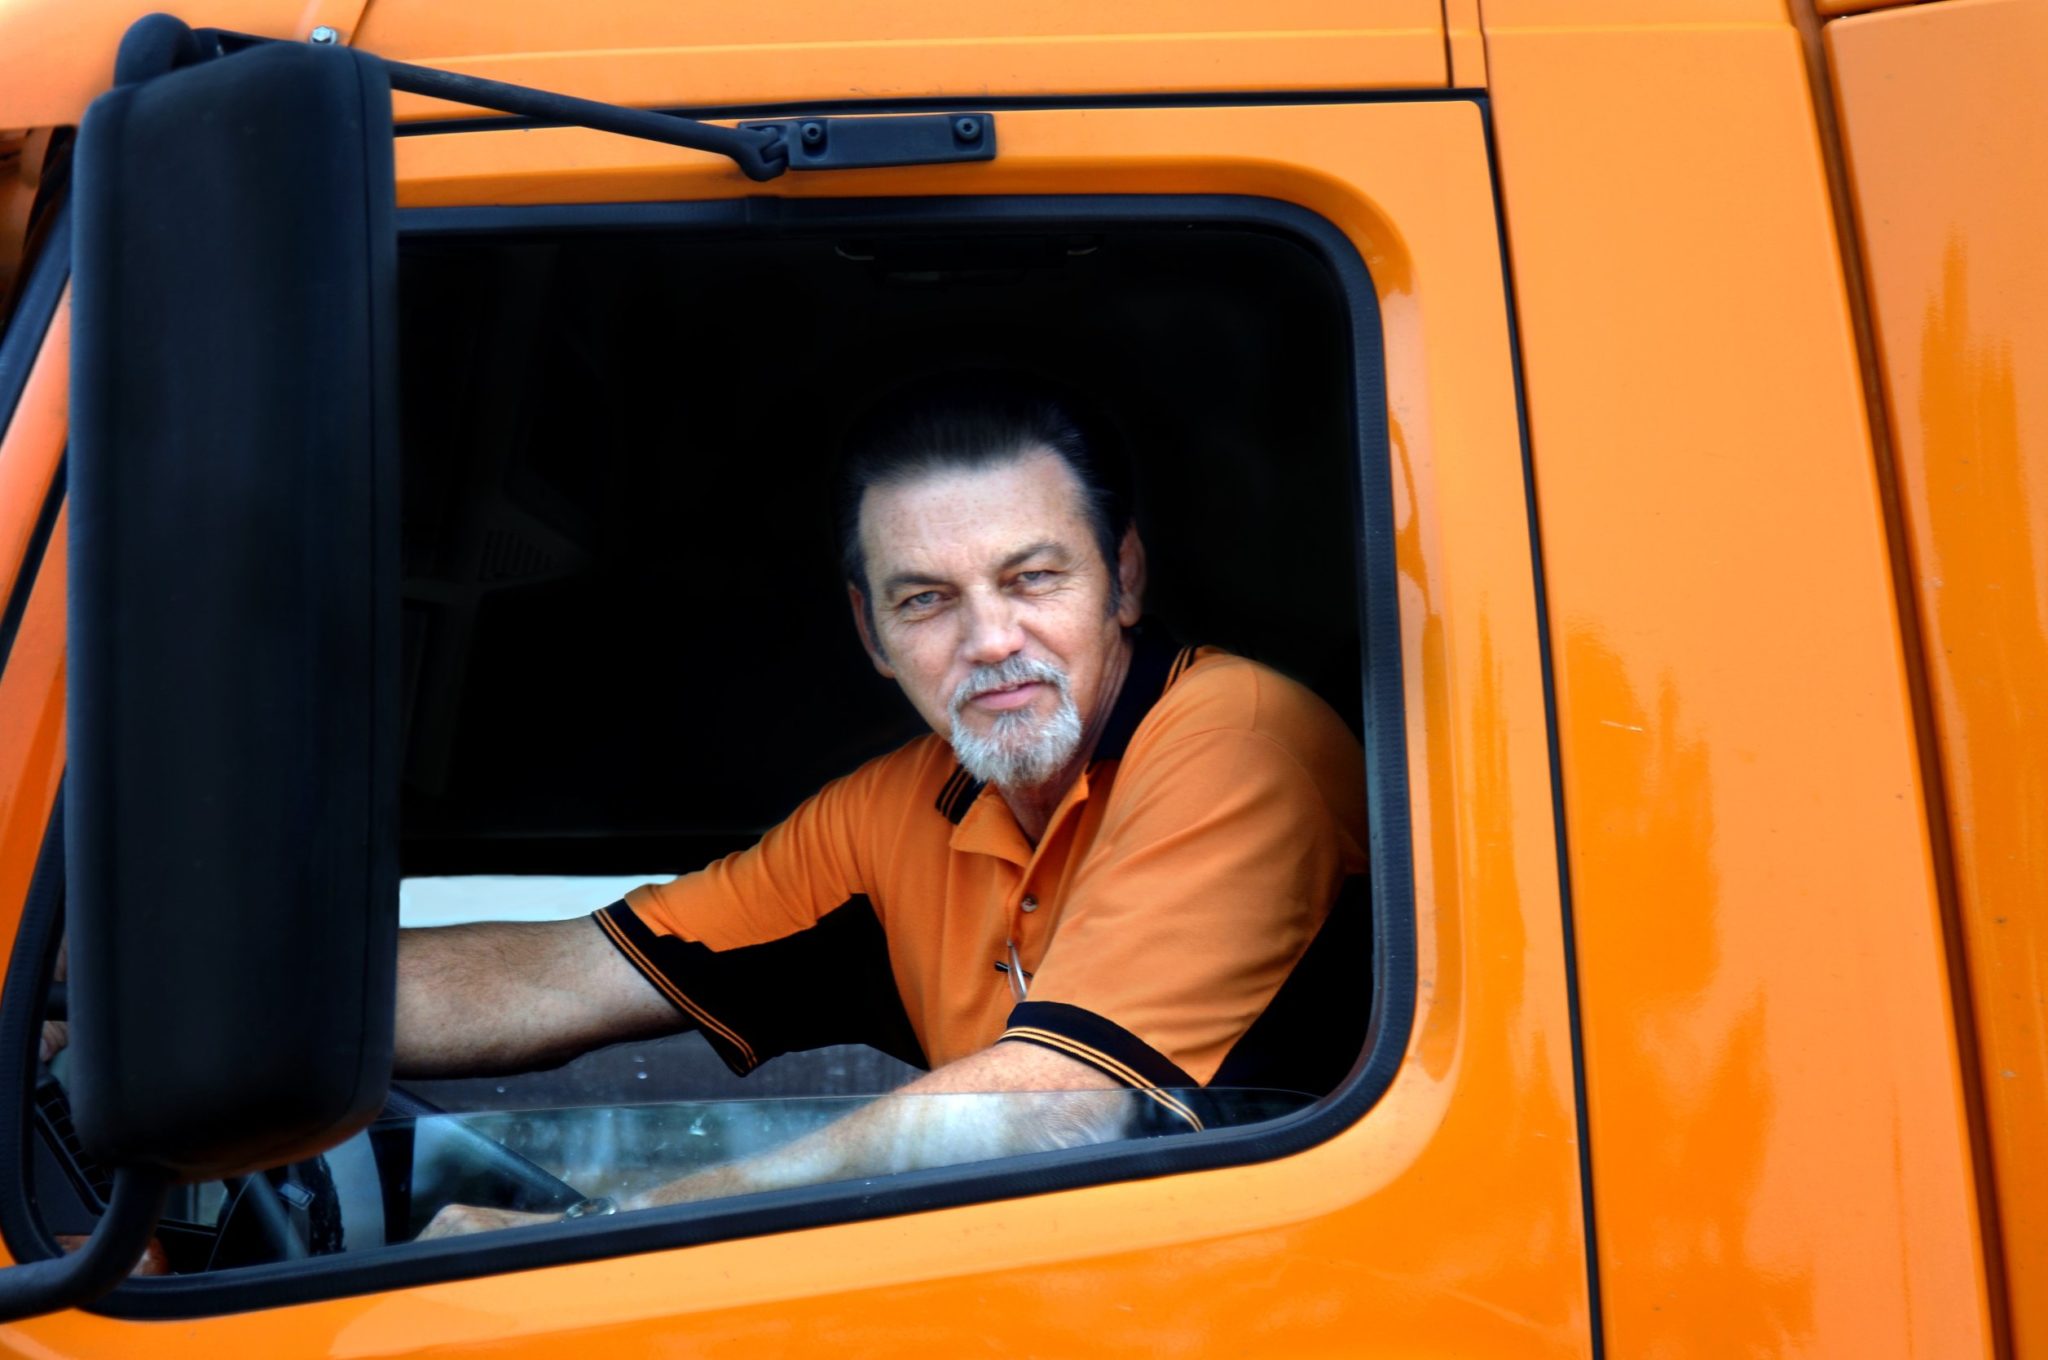 truck-drivers-tax-debt-help-wiztax